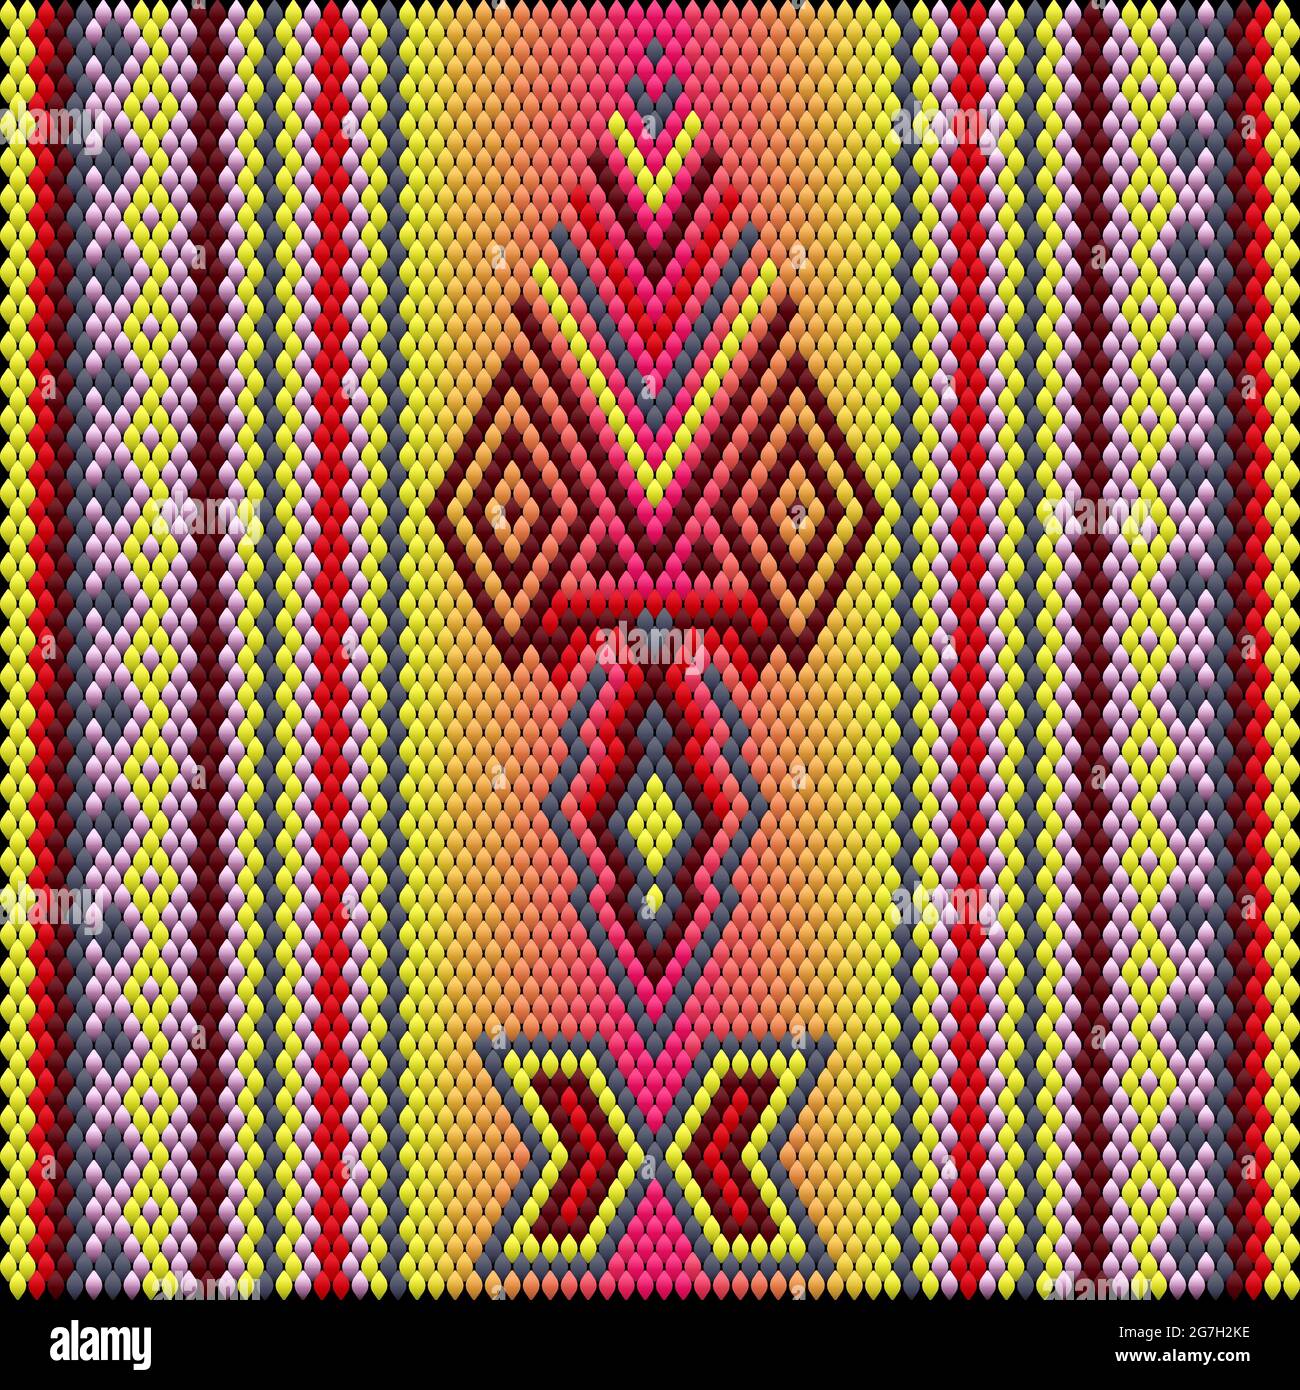 Un ornamento tradizionale di popoli e paesi dell'America Latina in cui colori ricchi attirano attenzione e ricchezza. Tappeti tessuti da donna con ornamenti Illustrazione Vettoriale